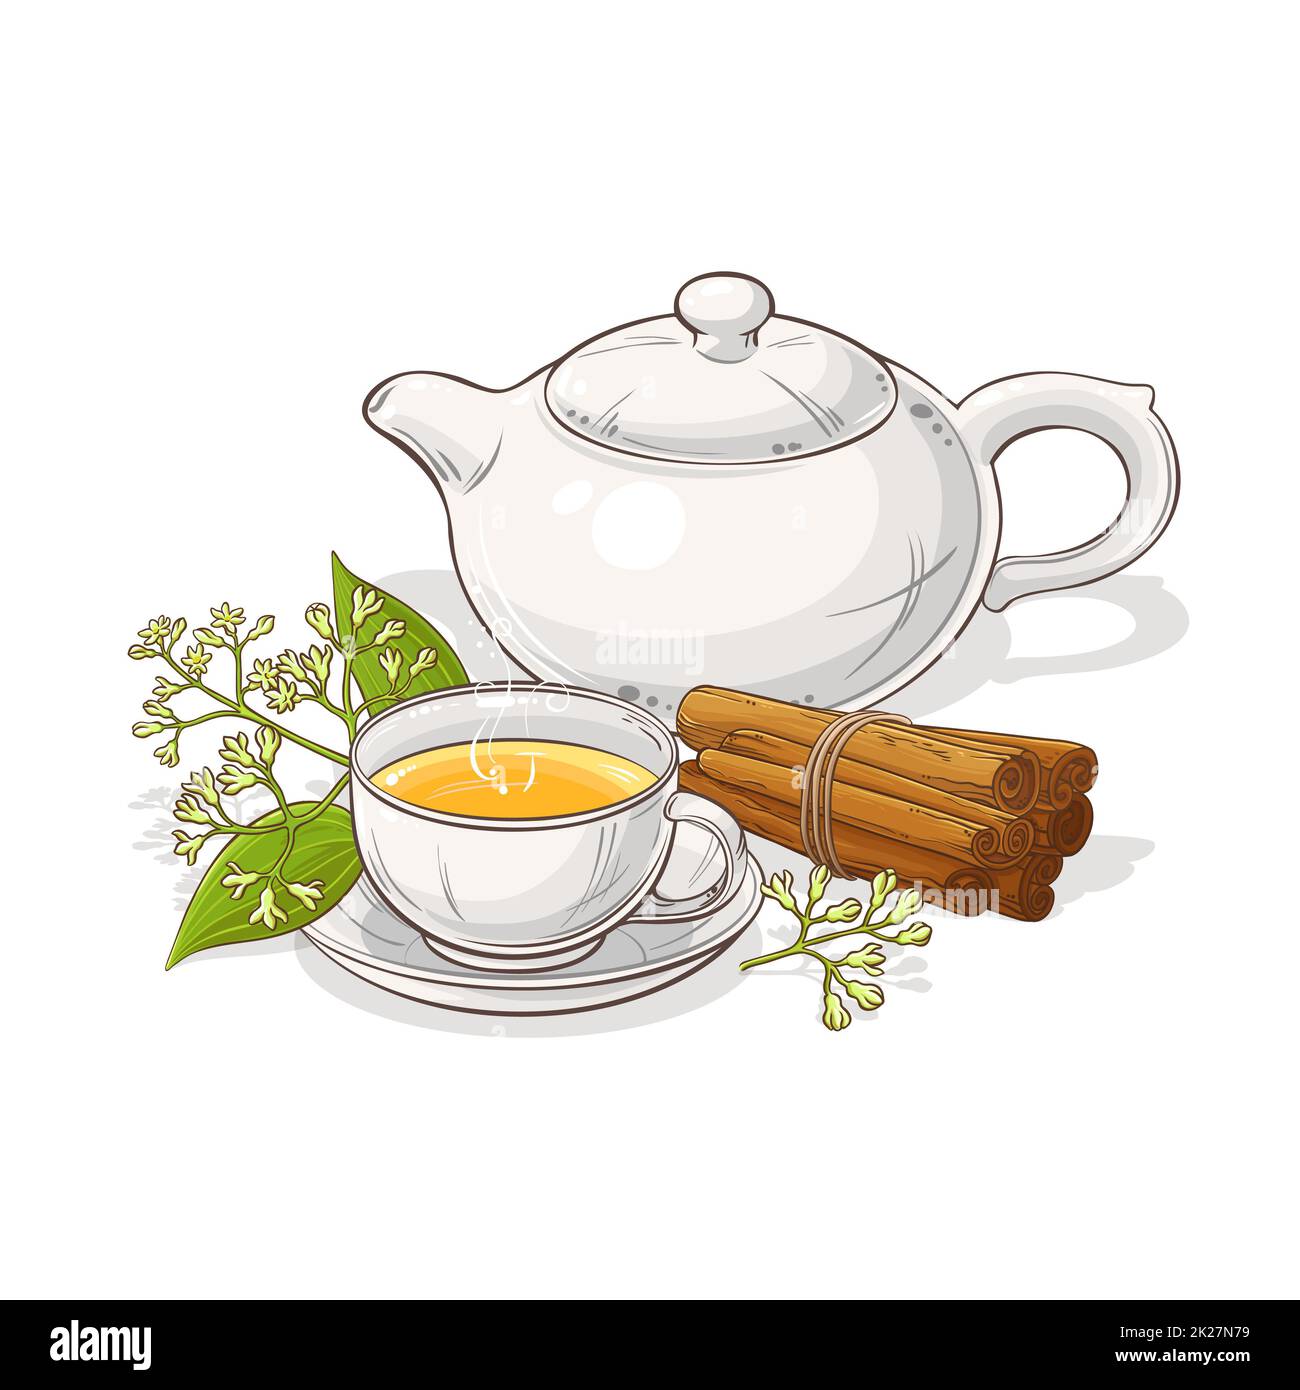 cinnamon tea illustration Stock Photo